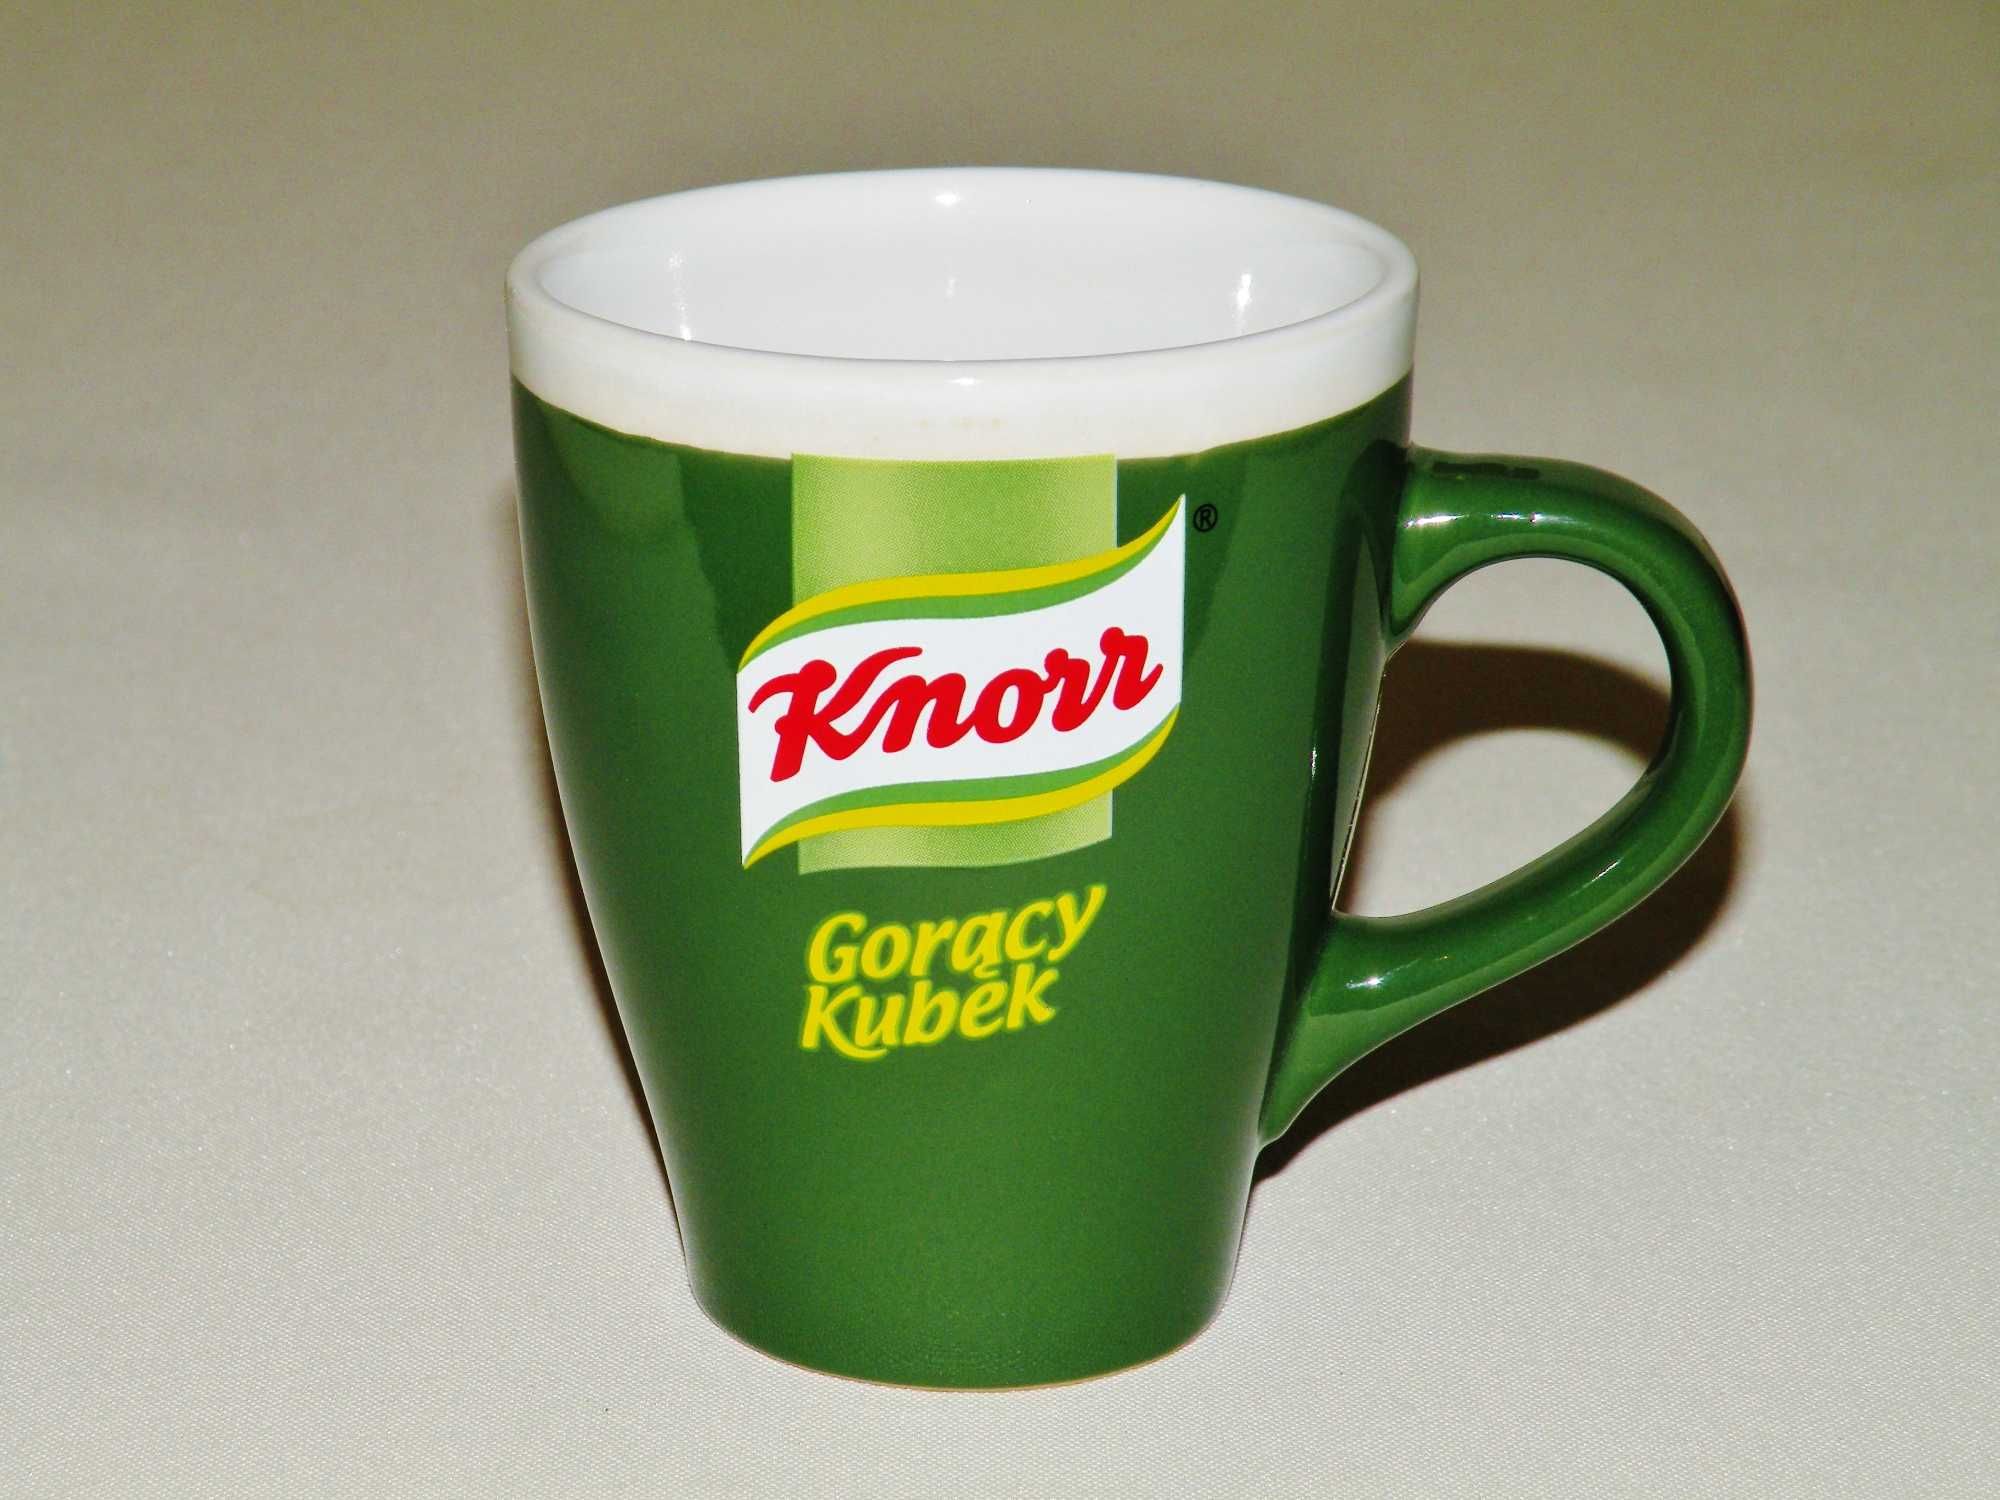 Kubek kolekcjonerski Knorr , standardowy , bez motto w środku